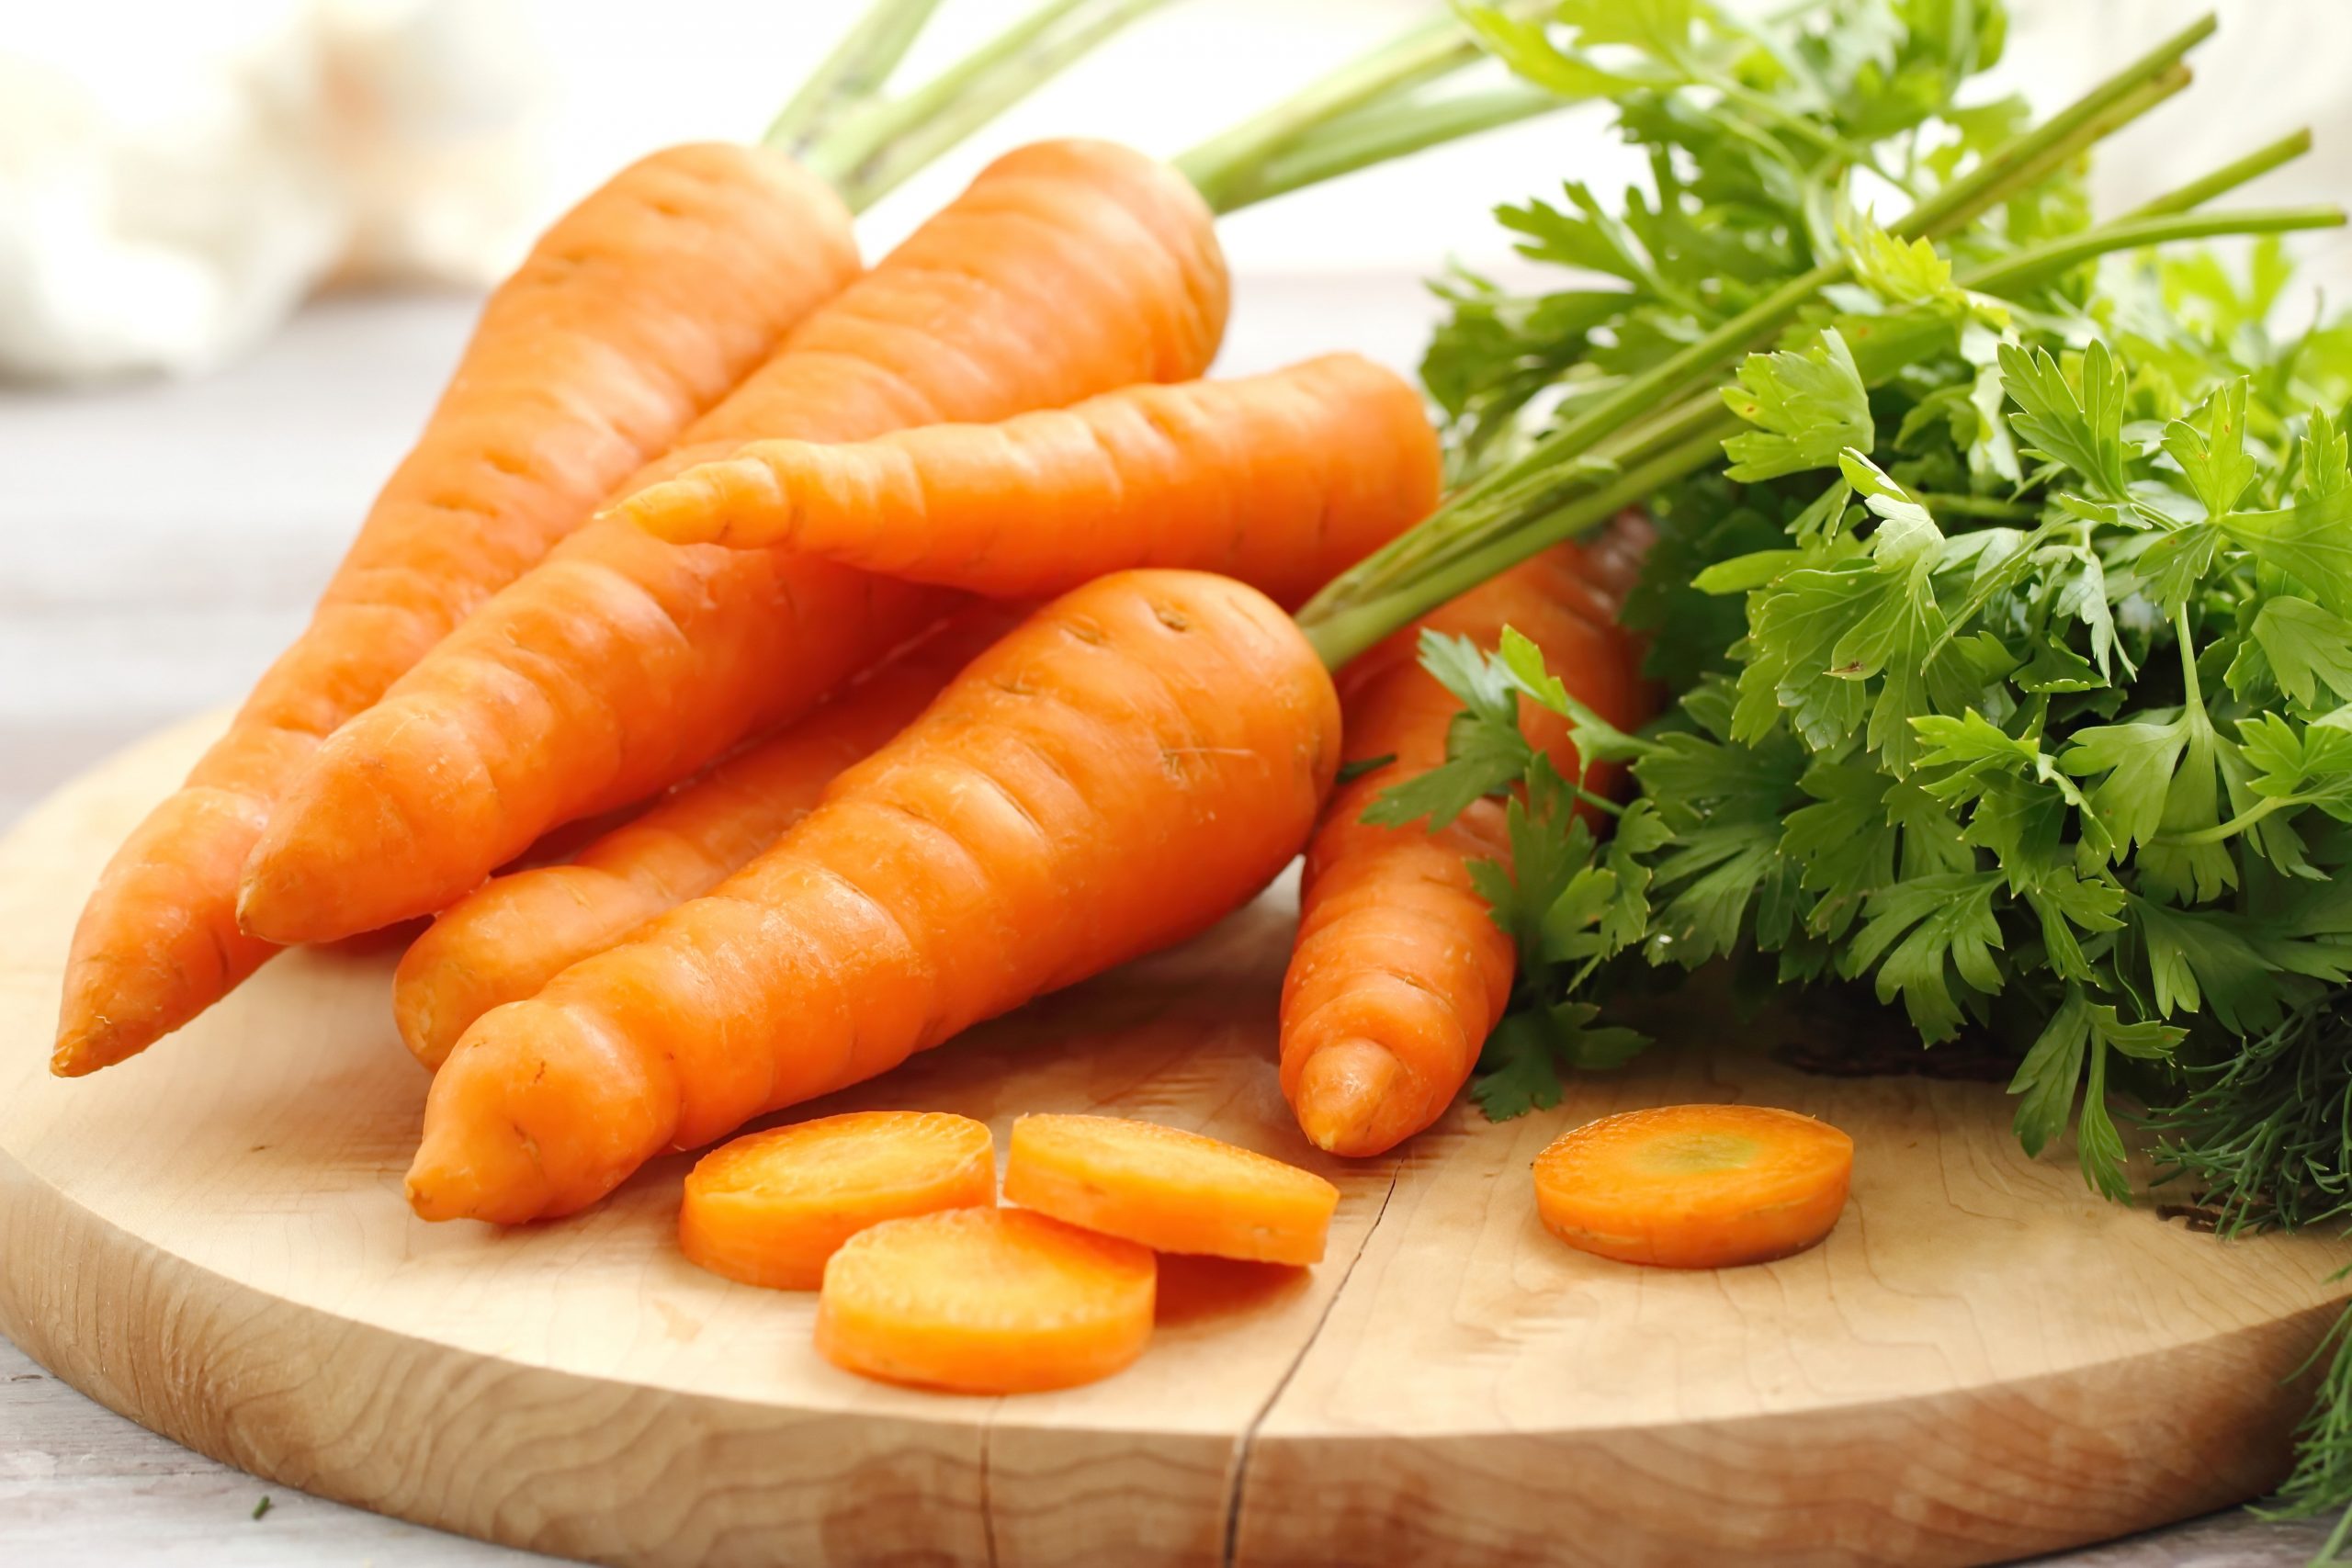 В детское меню очень важно включать различные полезные овощи – свеклу, бобовые, морковь